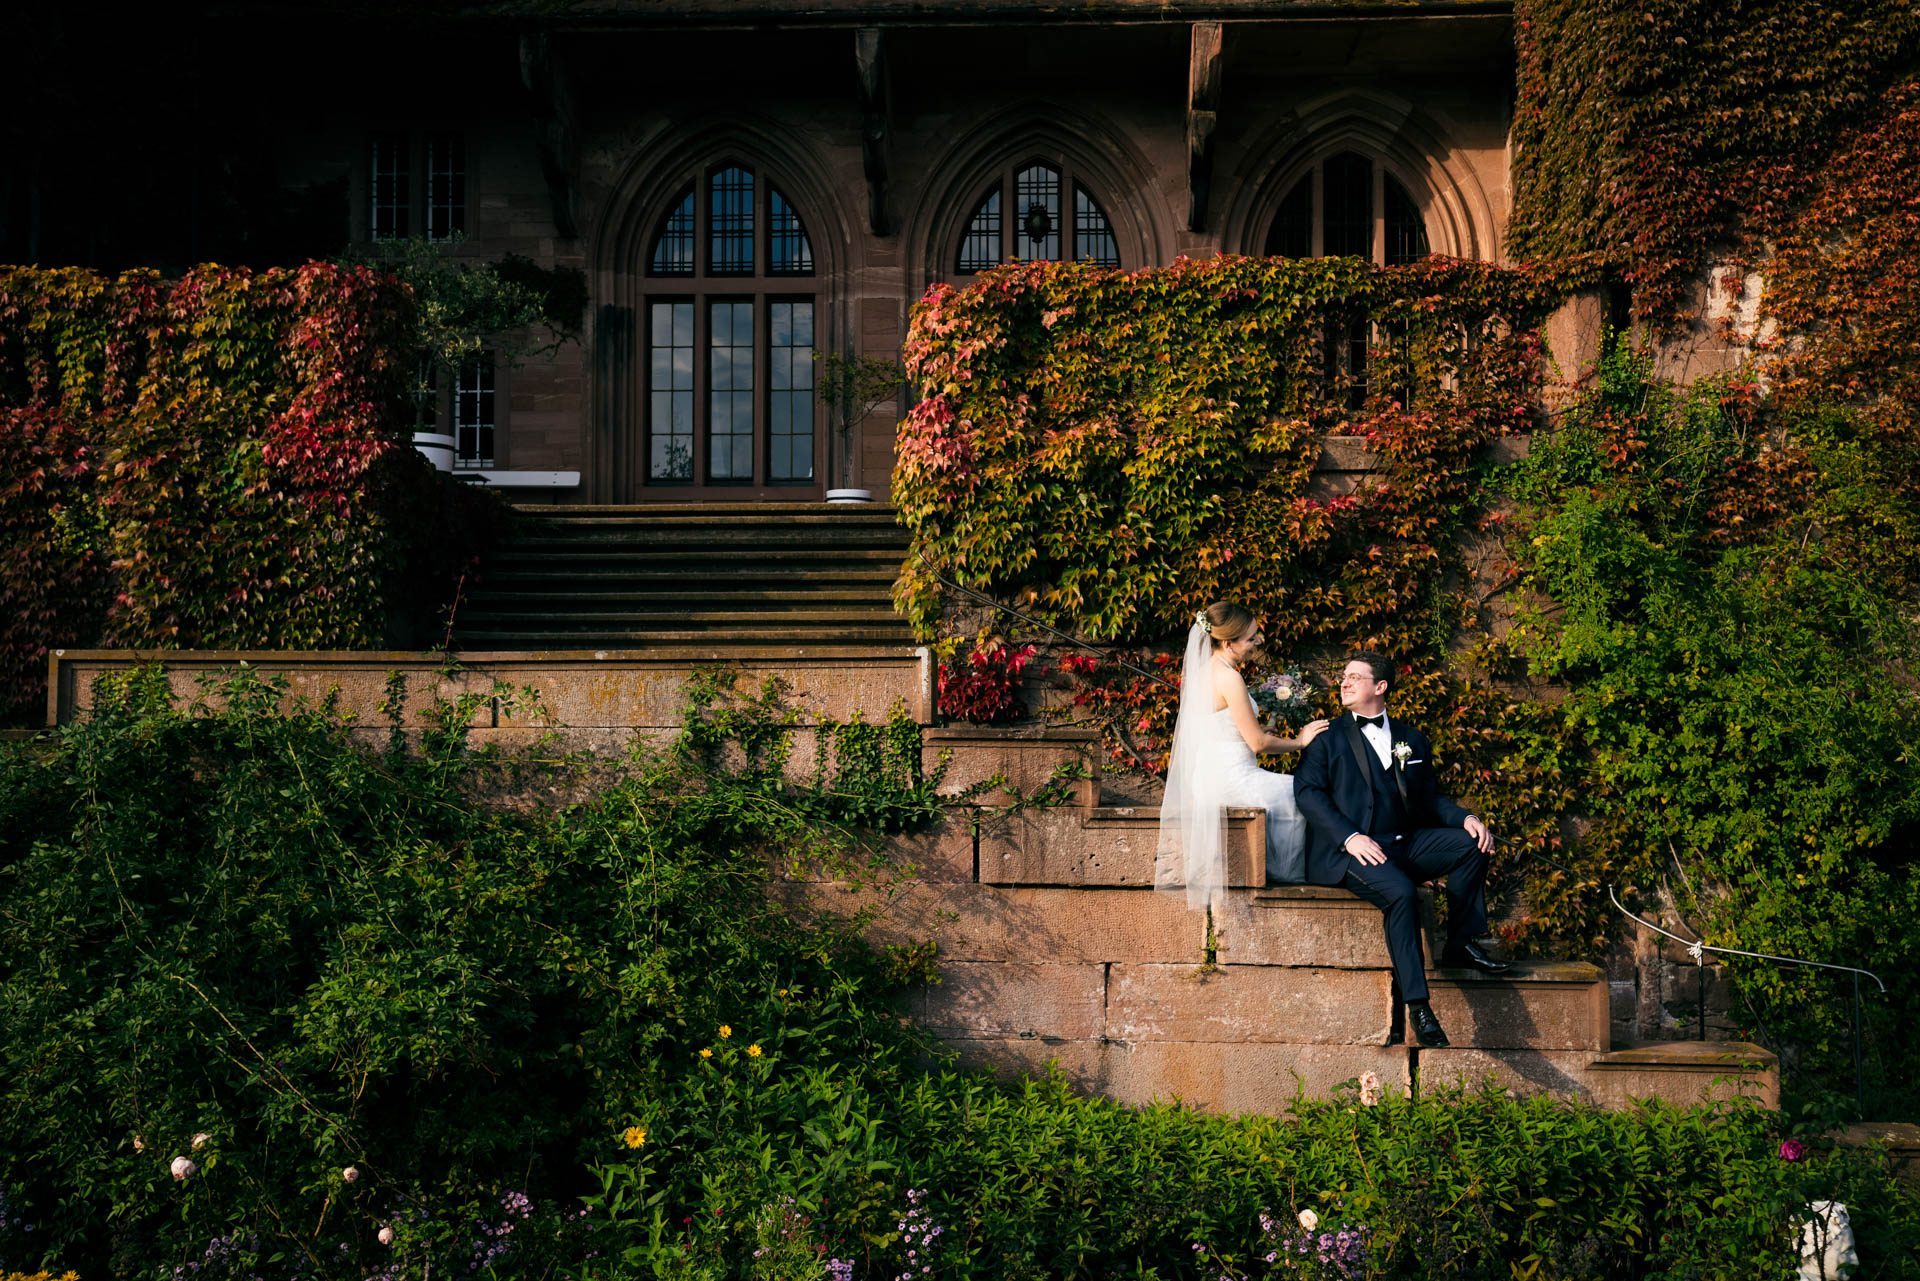 Romantische Momente zu zweit in der Hochzeitslocation: Authentische Aufnahmen, die das Paar in entspannter Zweisamkeit in der Natur zeigen.